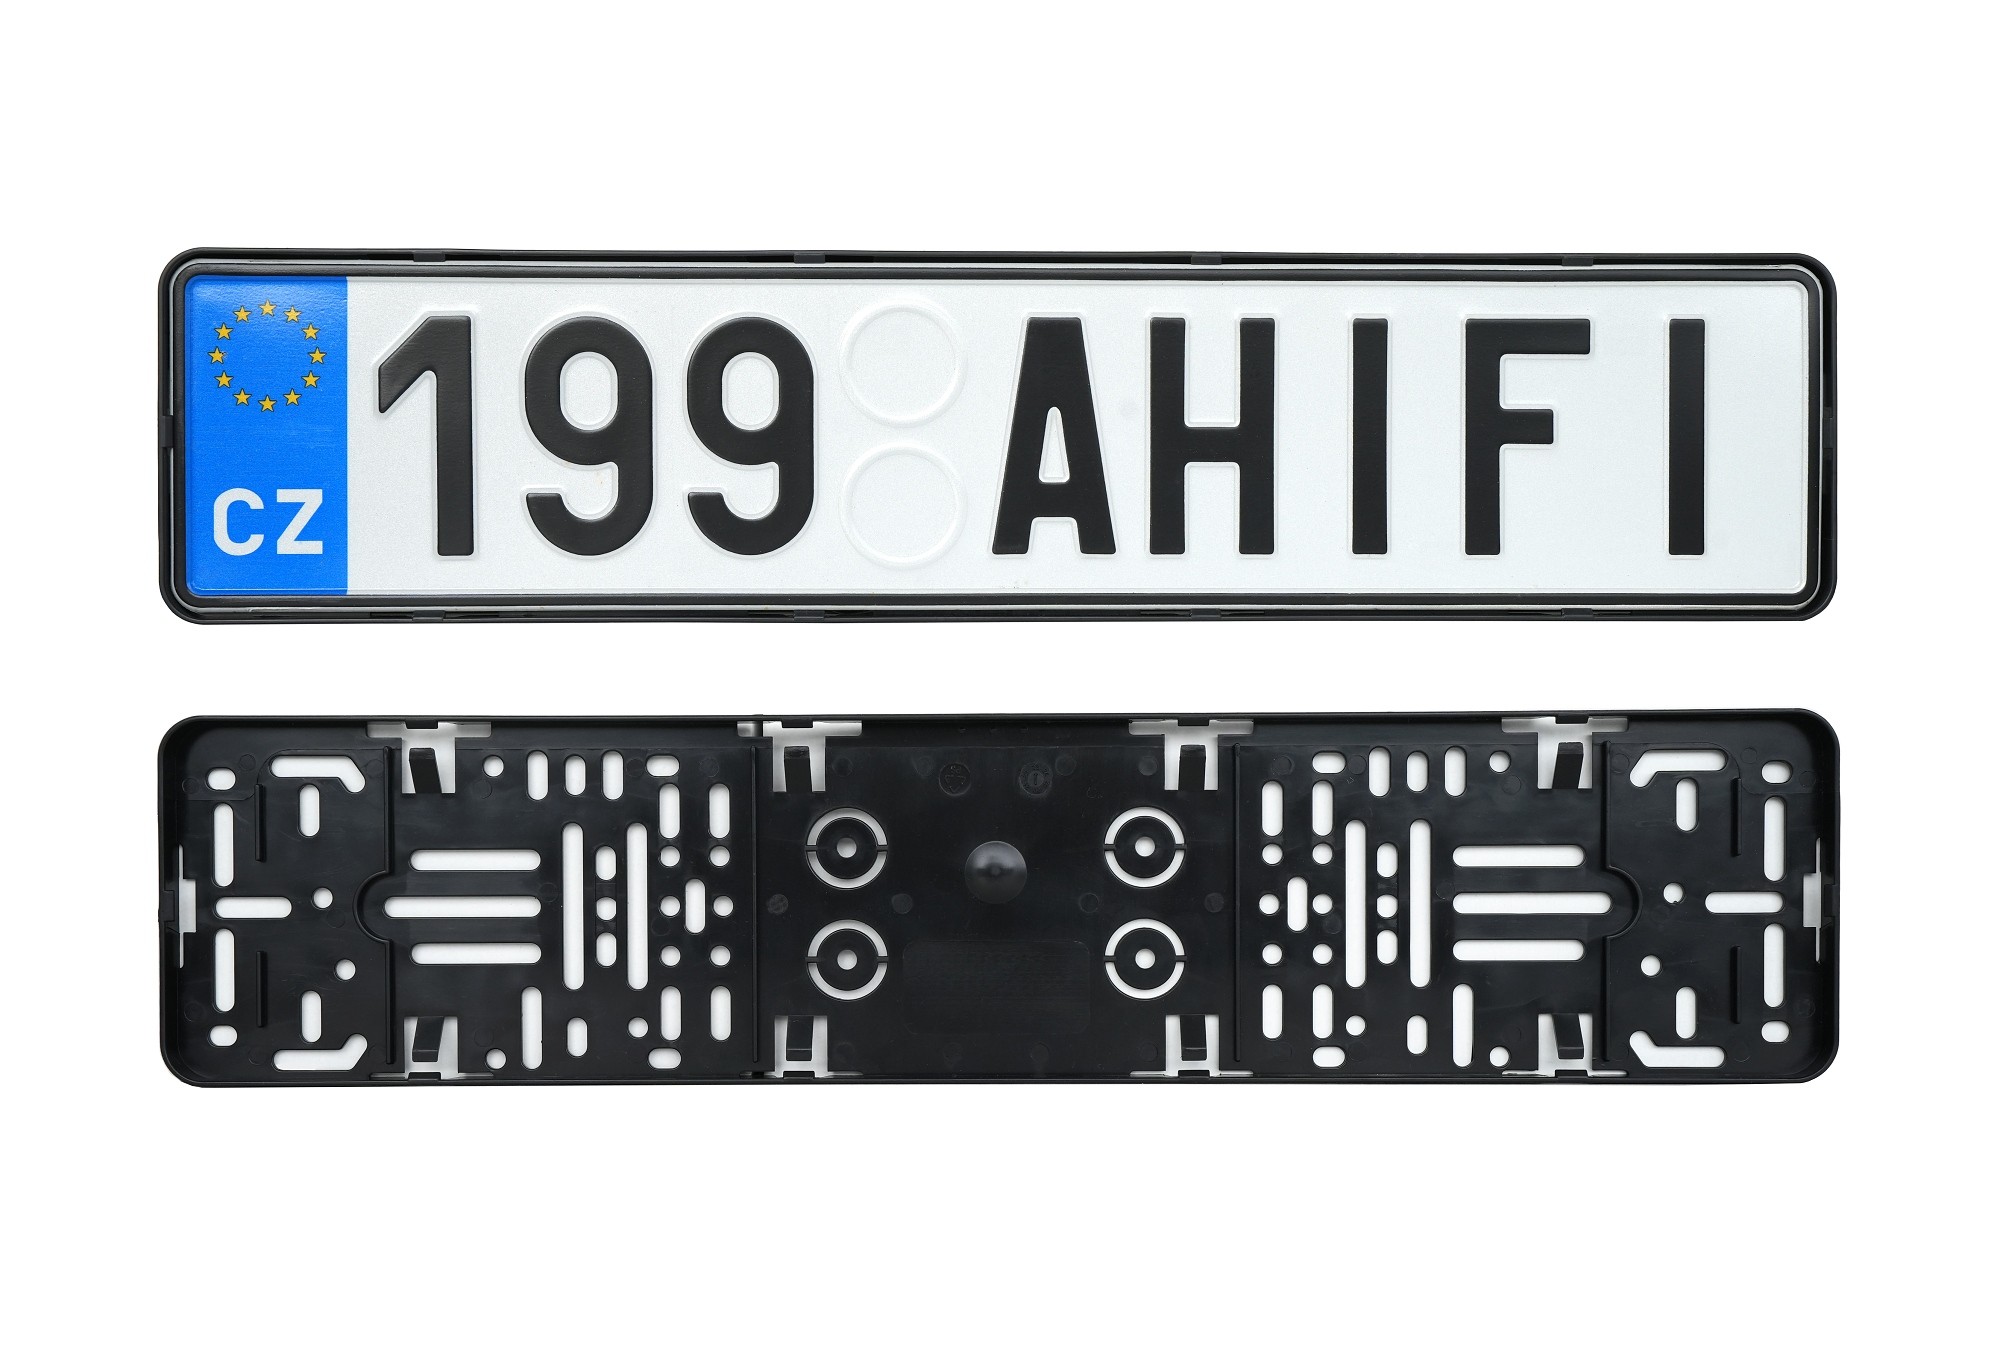 www.ahifi.cz